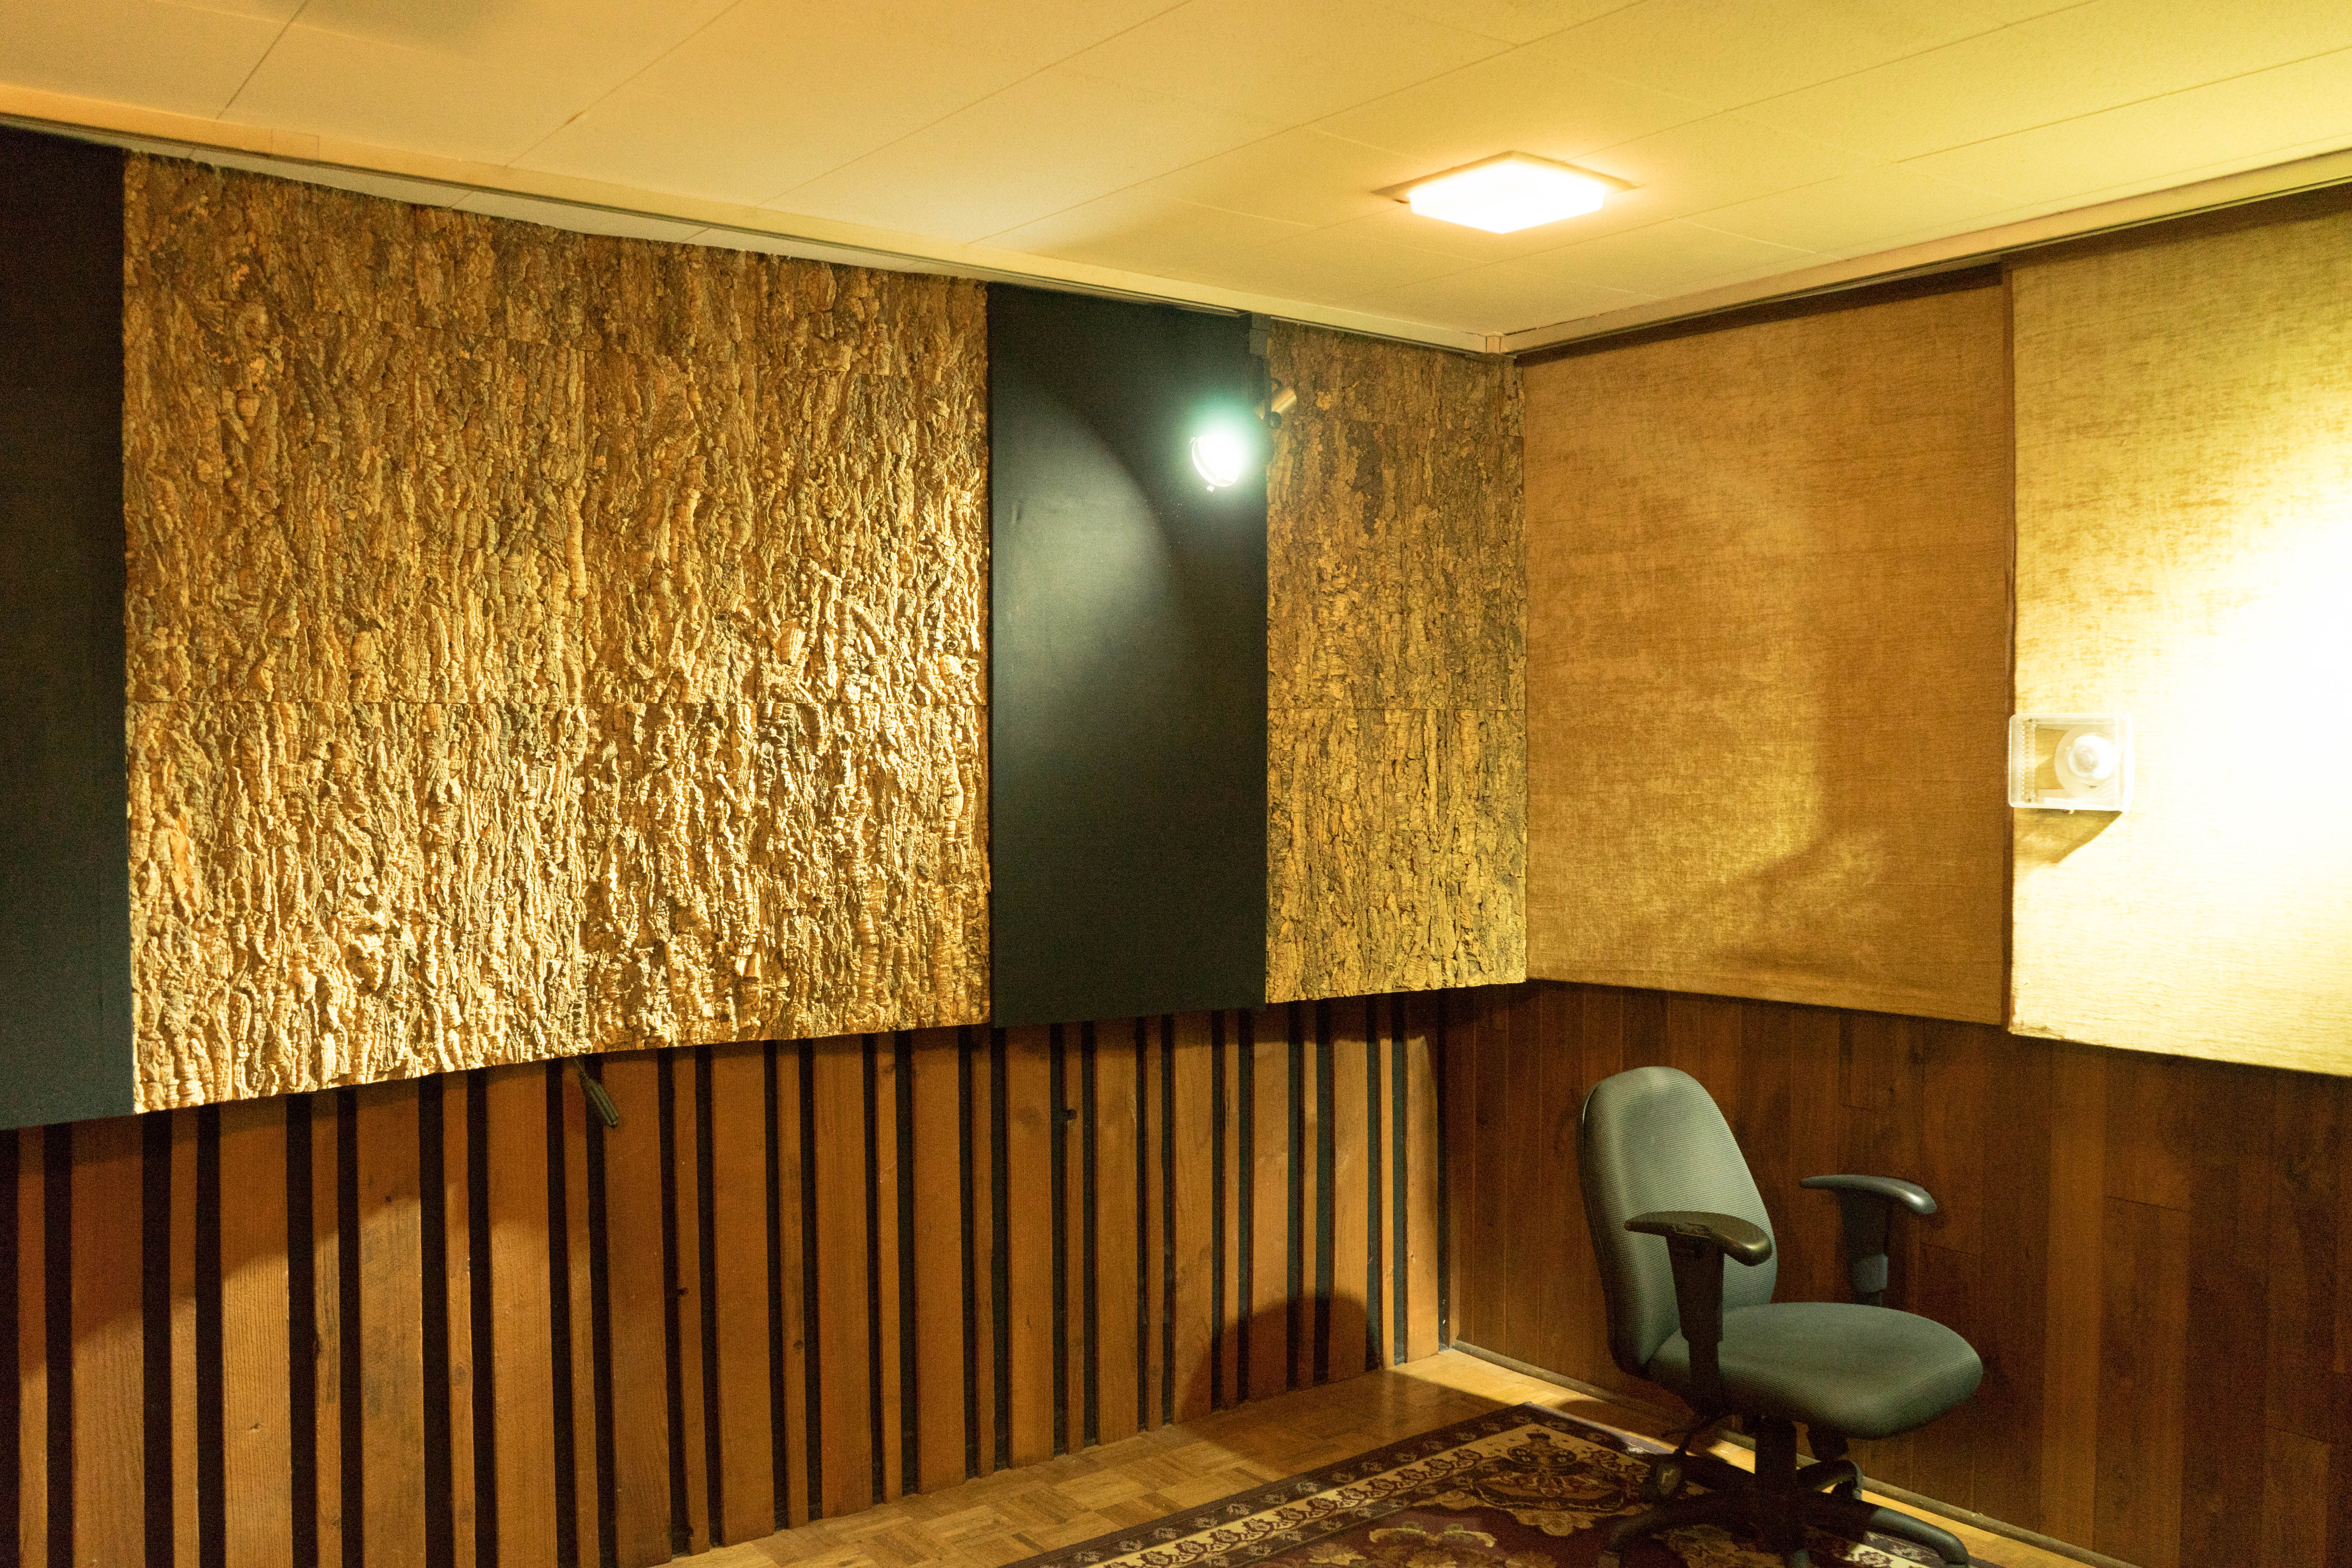 Sound Room with original cork